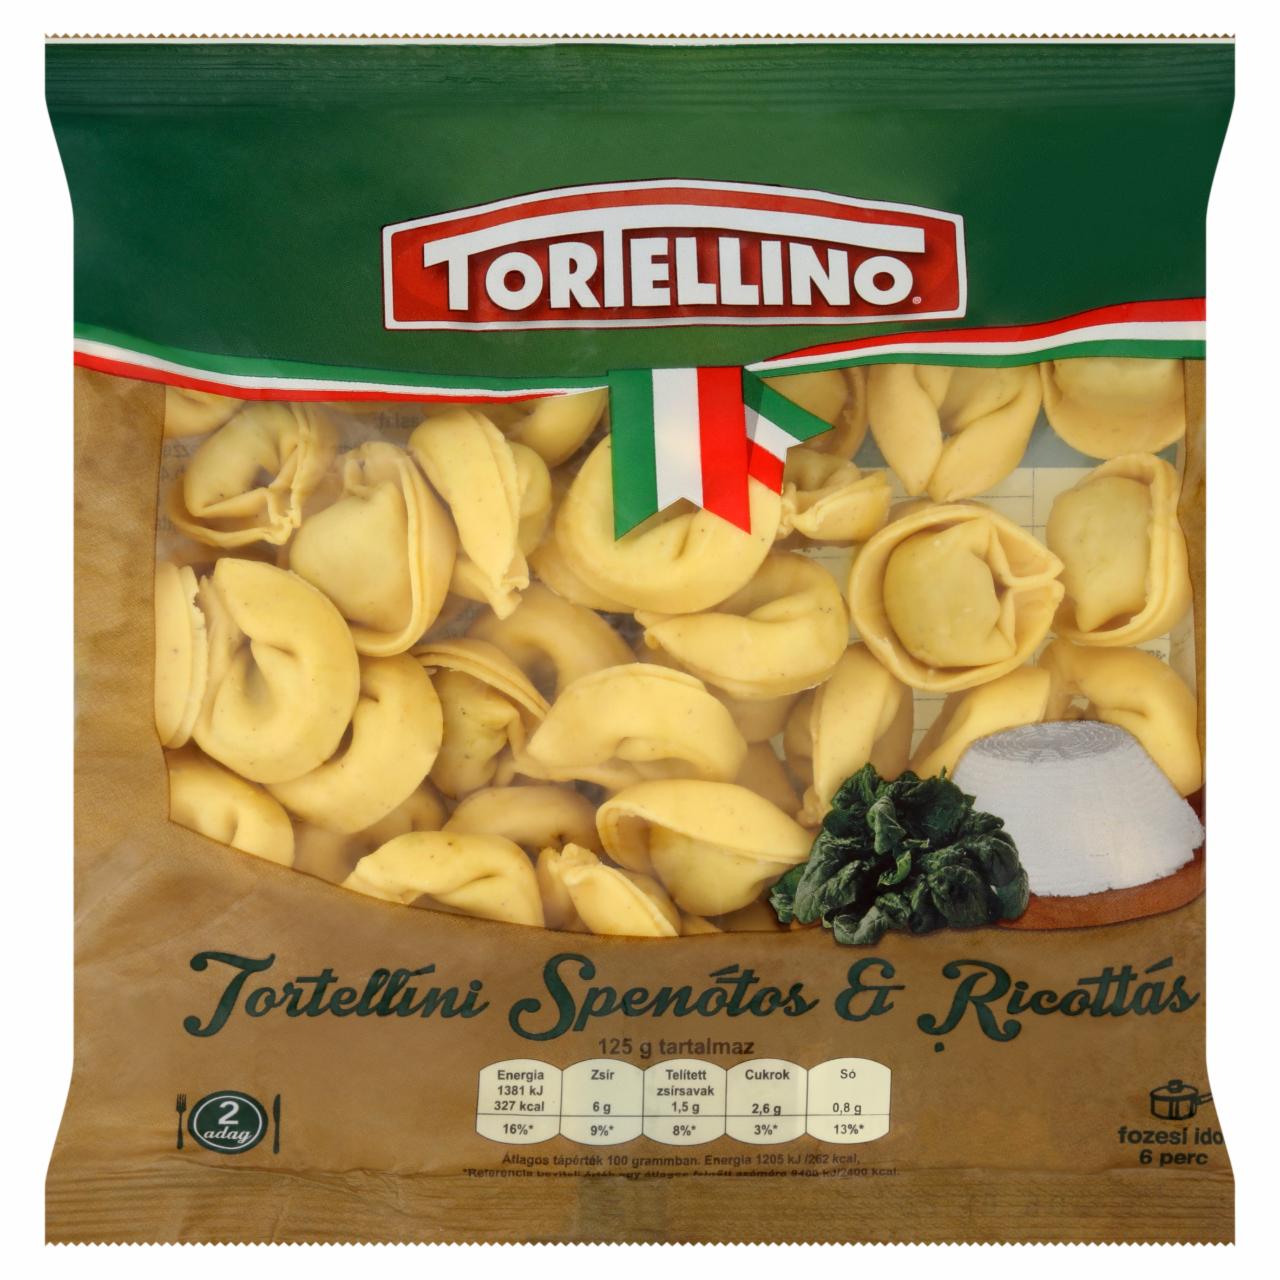 Képek - Tortellino Tortellini spenótos & ricottás friss tészta 250 g